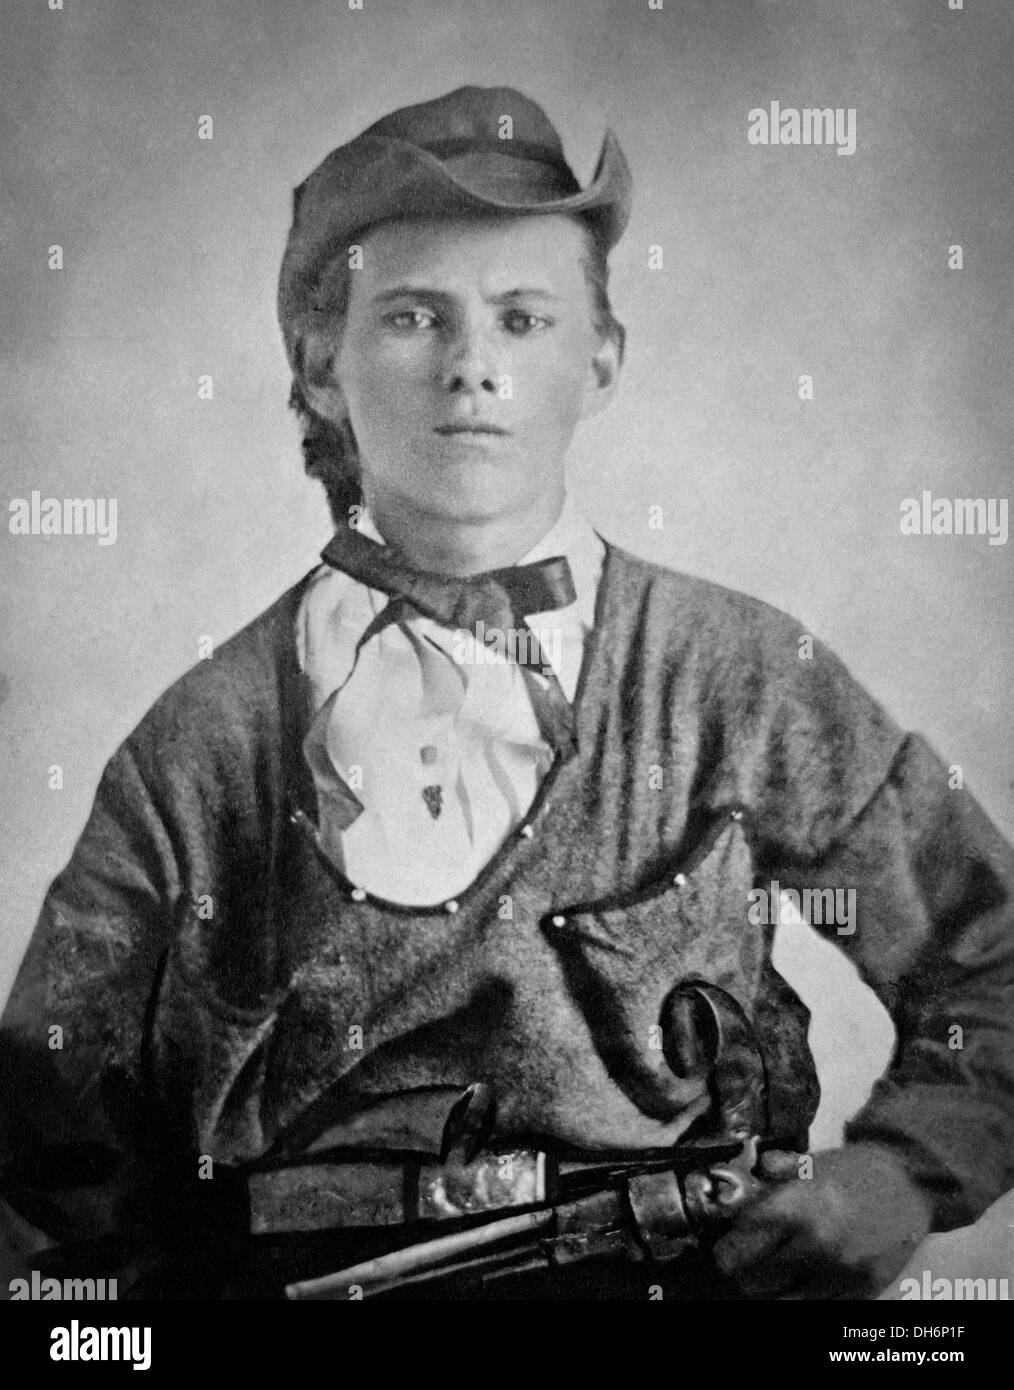 Jesse James, 17 Jahre alt Jesse Woodson James (1847-1882) in der Uniform der Quantrill Raiders während des amerikanischen Bürgerkriegs. Stockfoto